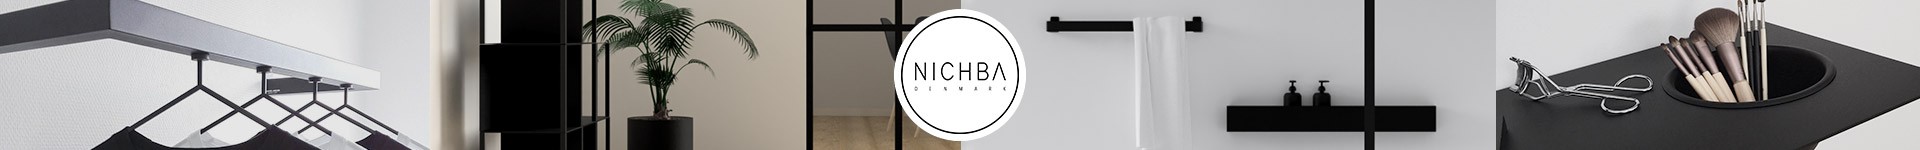 Nichba-Design 